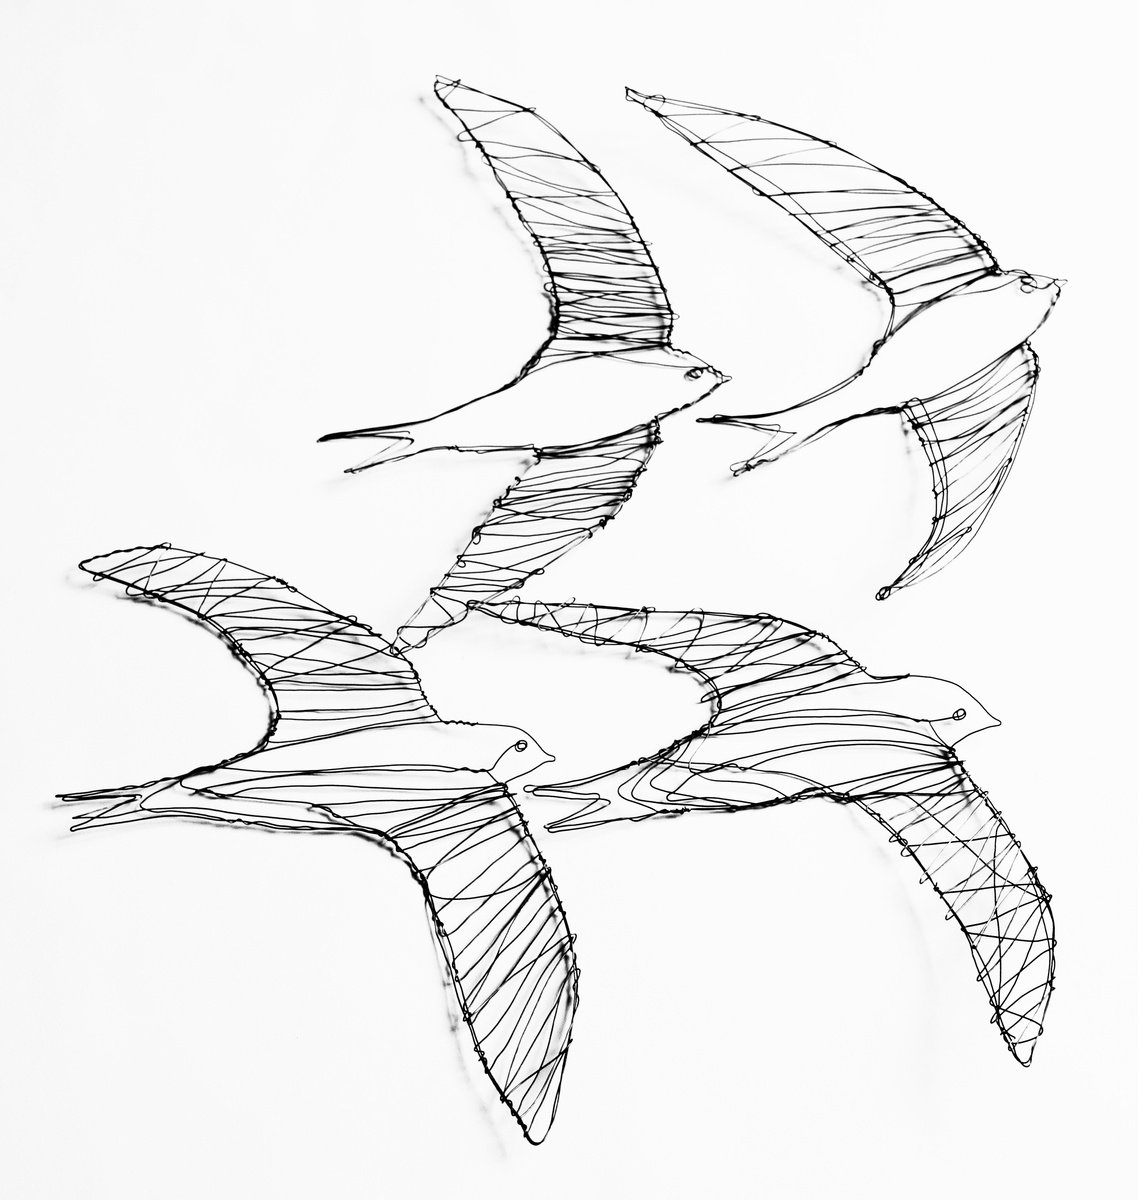 Four swifts in flight by Jane Tilley